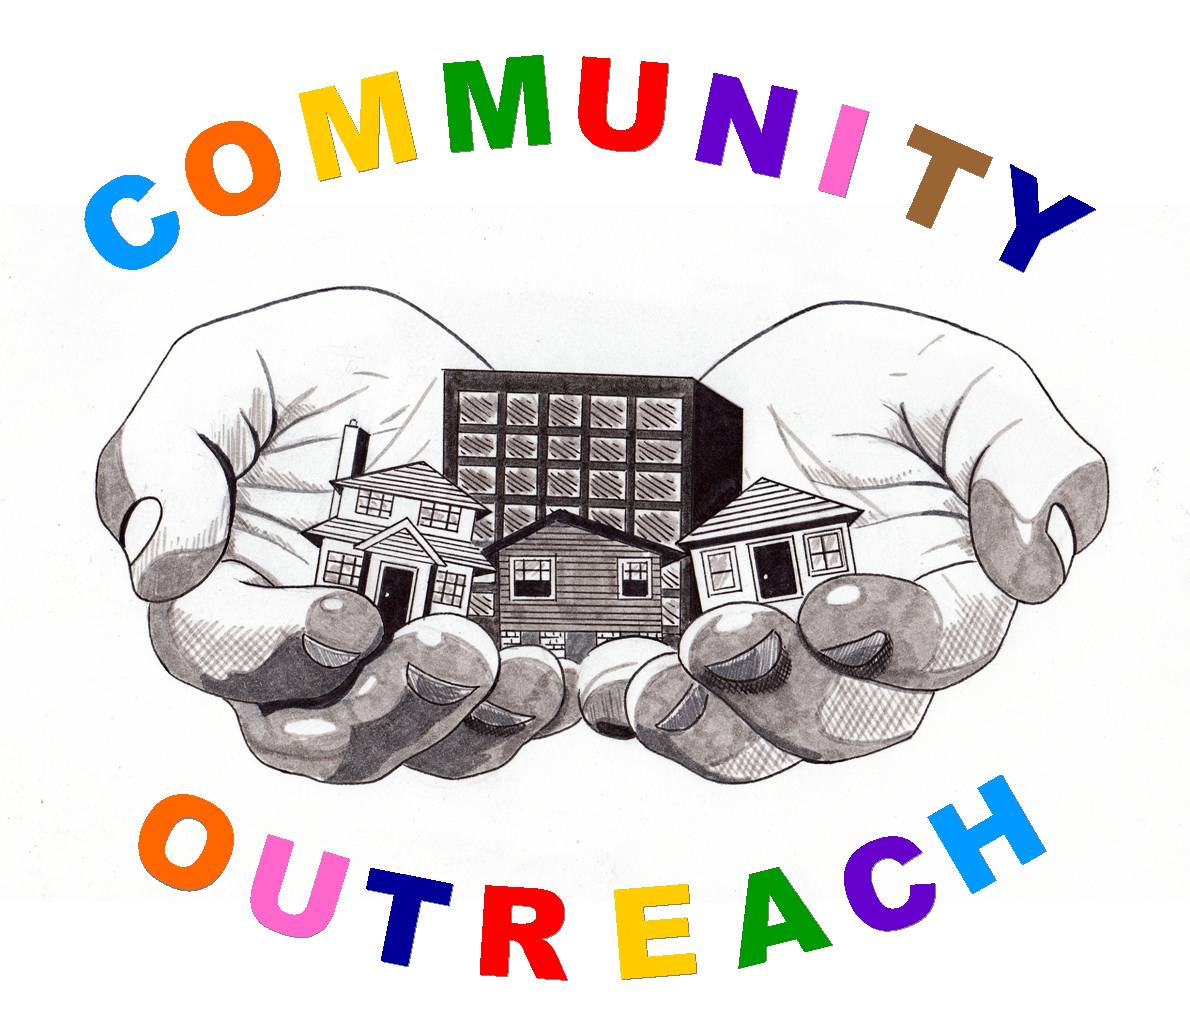 community outreach center